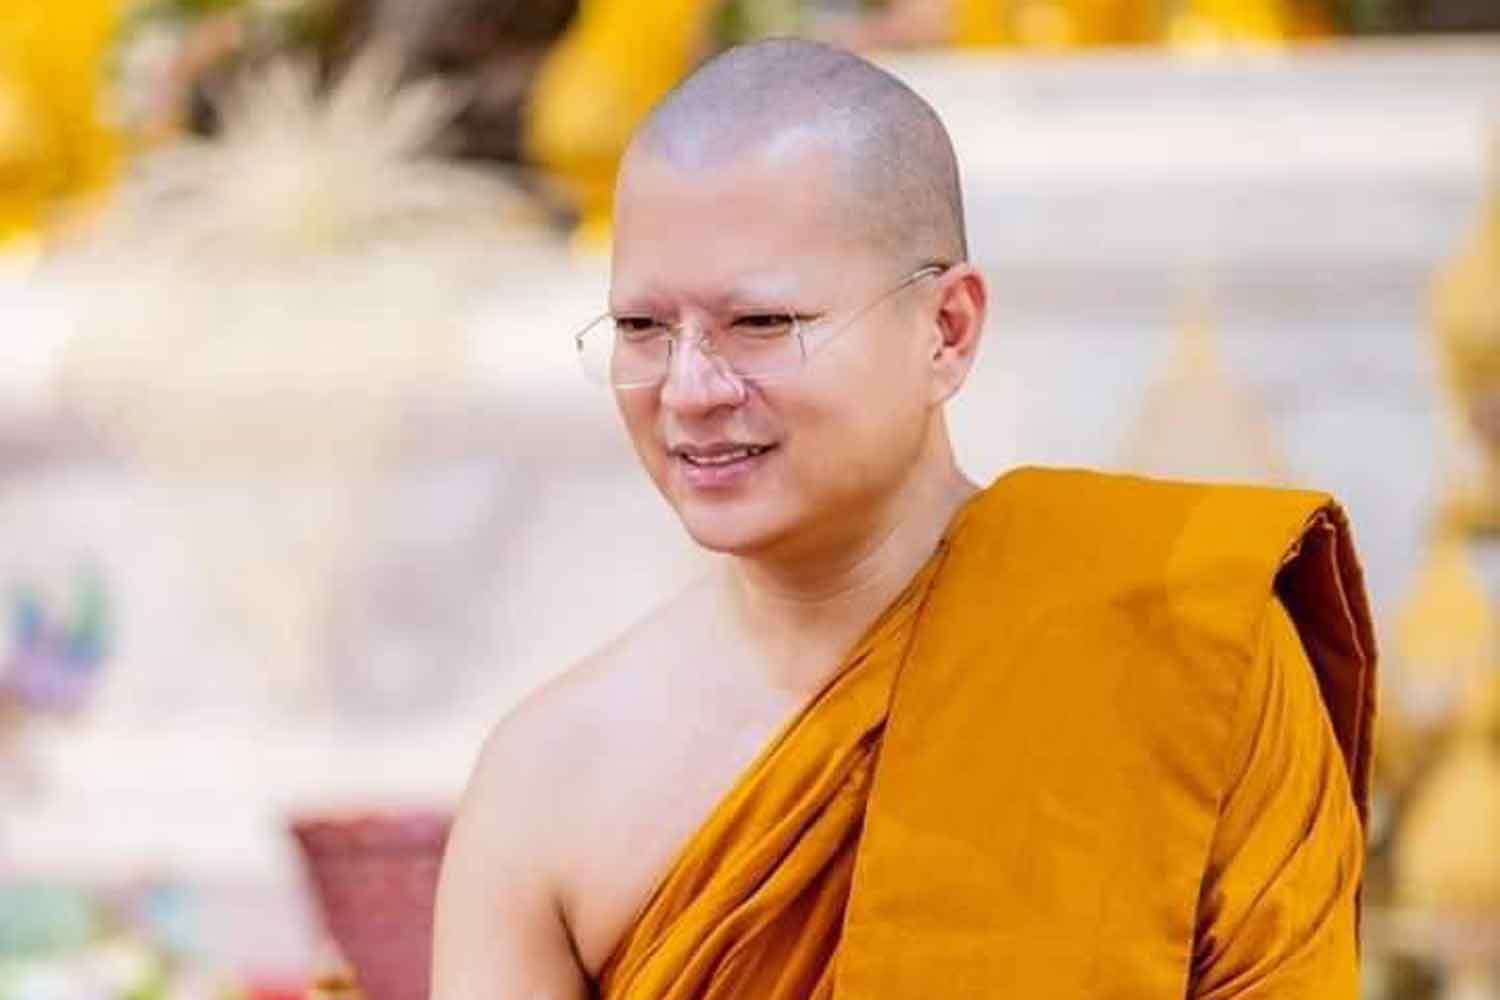 Cựu trụ trì Phra Ajarn Khom, tên thật là Khom Kongkaeowas, bị kết án 468 năm tù vì tội tham ô tiền công đức - Ảnh: BANGKOK POST